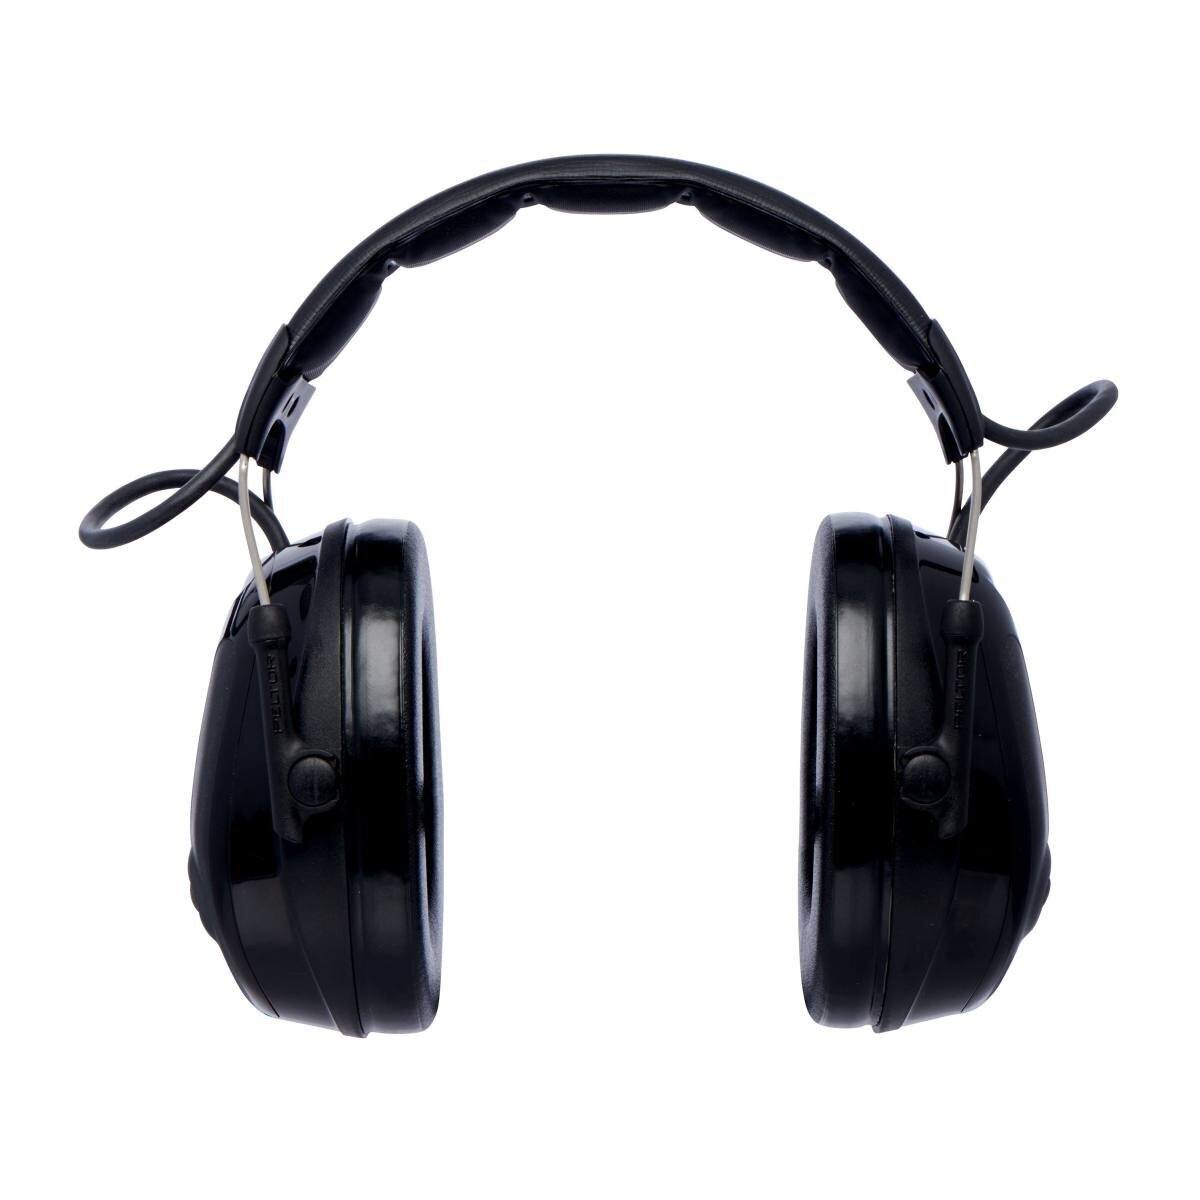 3M PELTOR ProTac III Slim gehoorbeschermende headset, zwart, hoofdband, met actieve, niveau-afhankelijke dempingstechnologie voor het waarnemen van omgevingsgeluid, SNR=26 dB, zwart